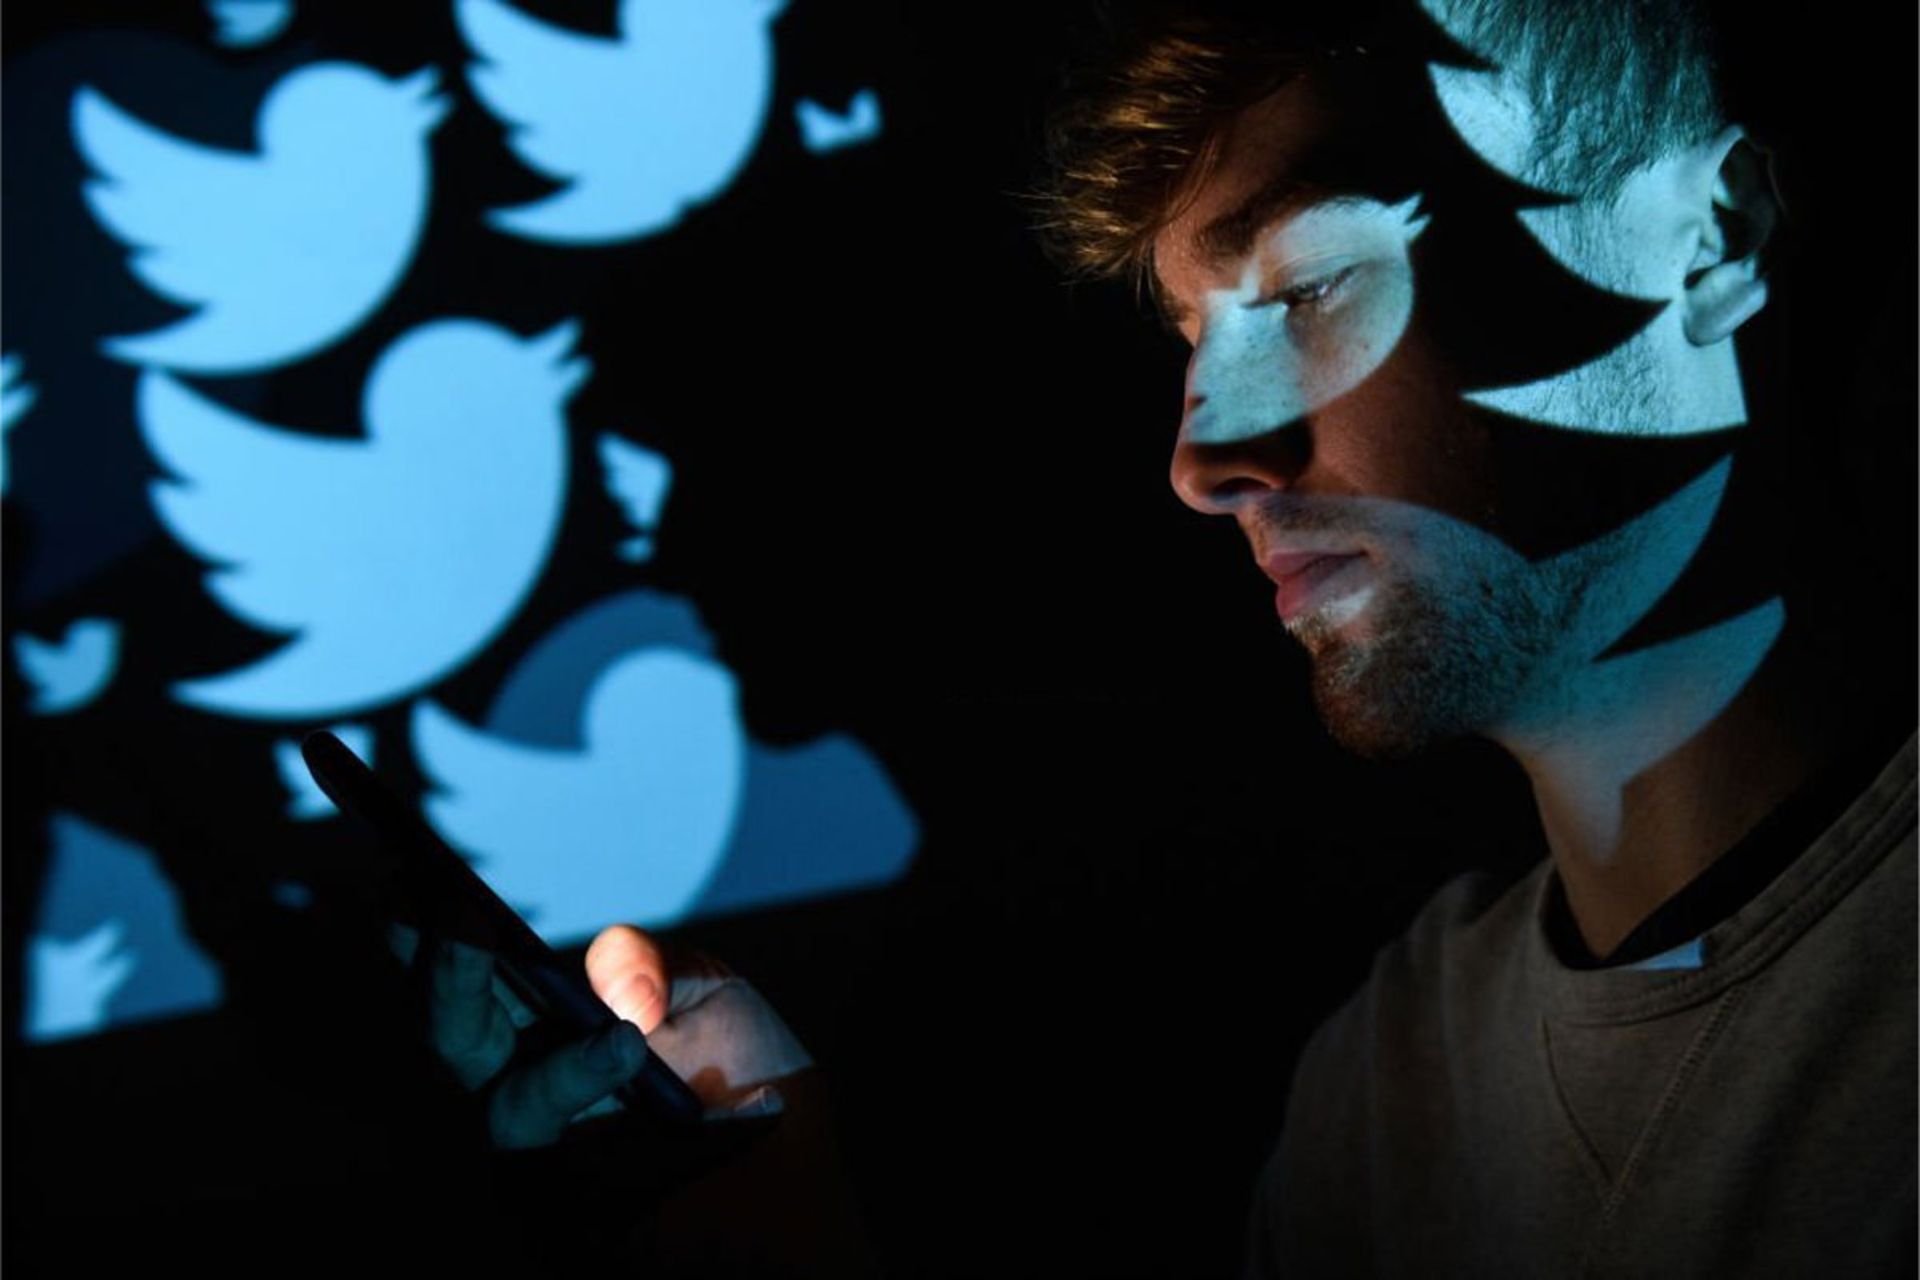 مرد جوان در حال استفاده از شبکه اجتماعی توییتر / Twitter روی گوشی